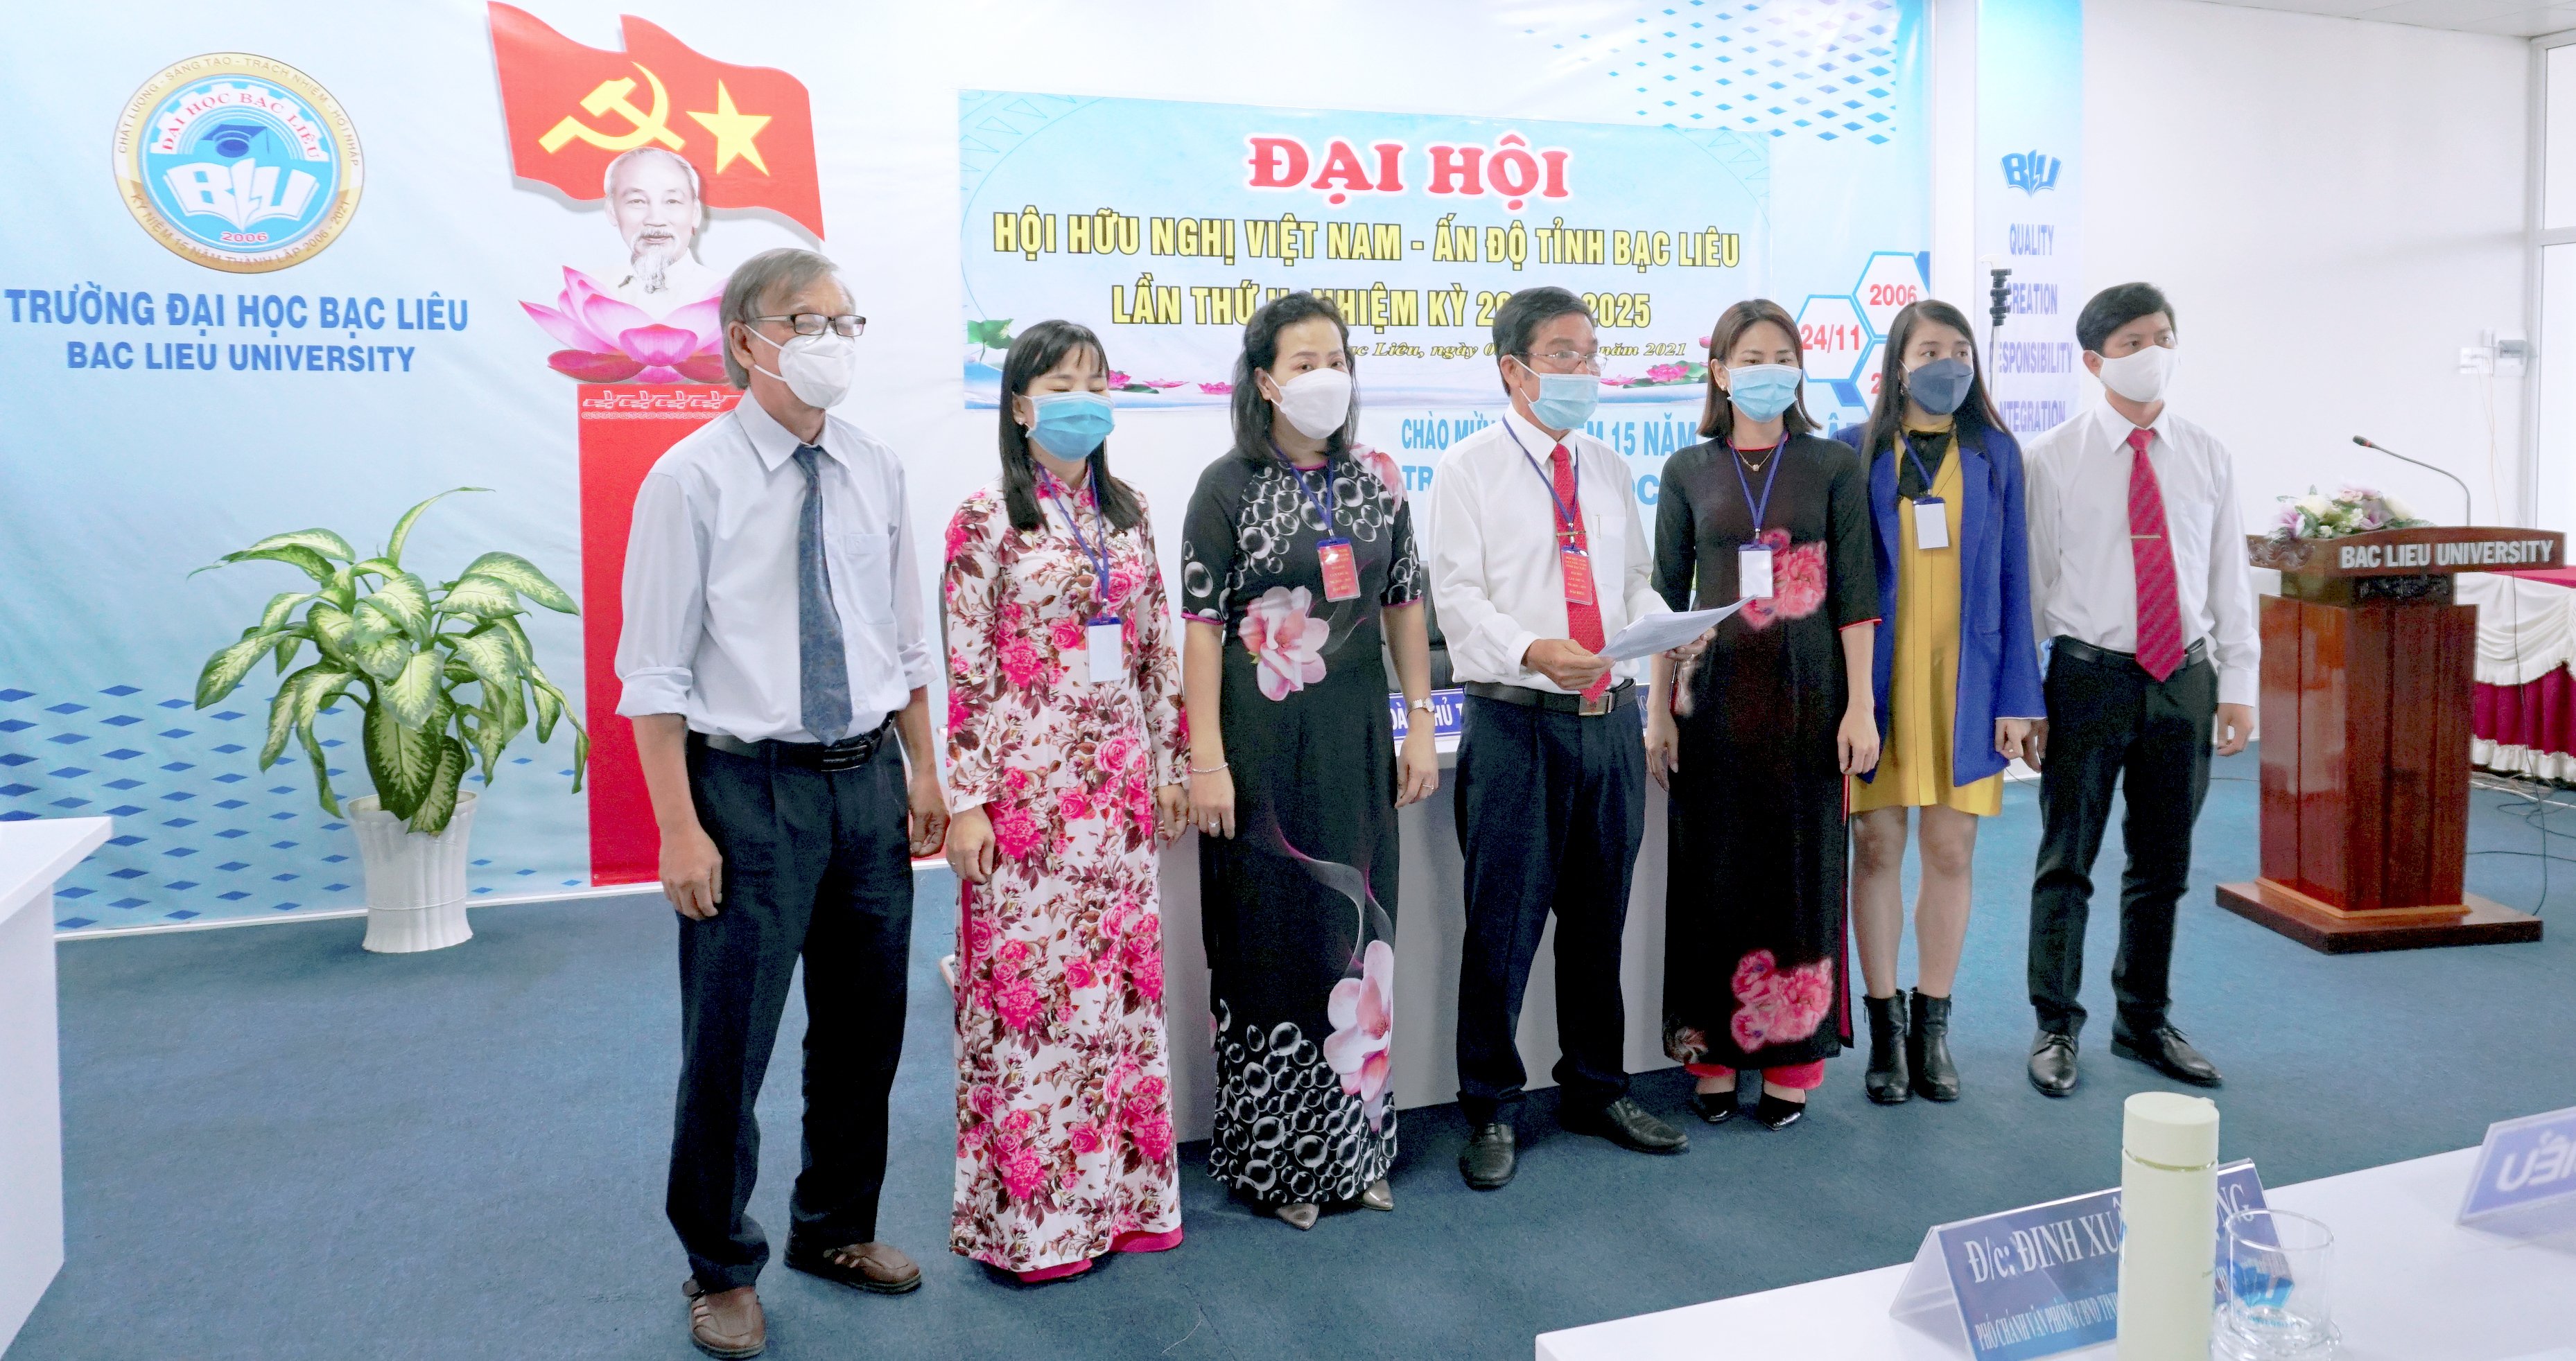 Trường Đại học Bạc Liêu: Tổ chức Đại hội Hội hữu nghị Việt Nam - Ấn Độ tỉnh Bạc Liêu lần thứ II, nhiệm kỳ 2020 – 2025.